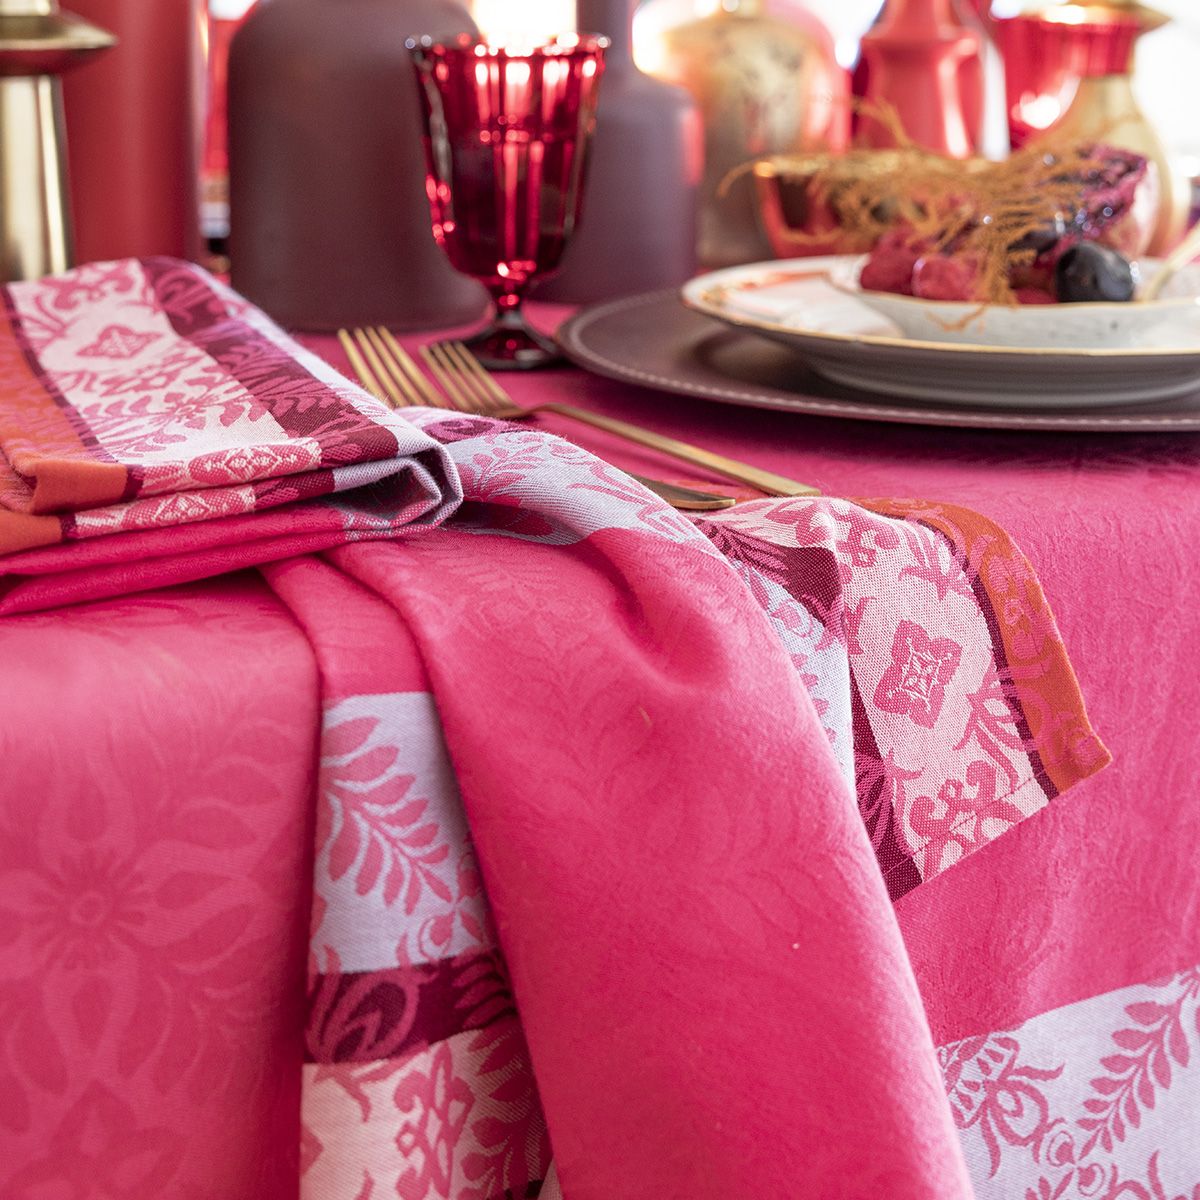 Mumbai - Coated Tablecloths & Placemats